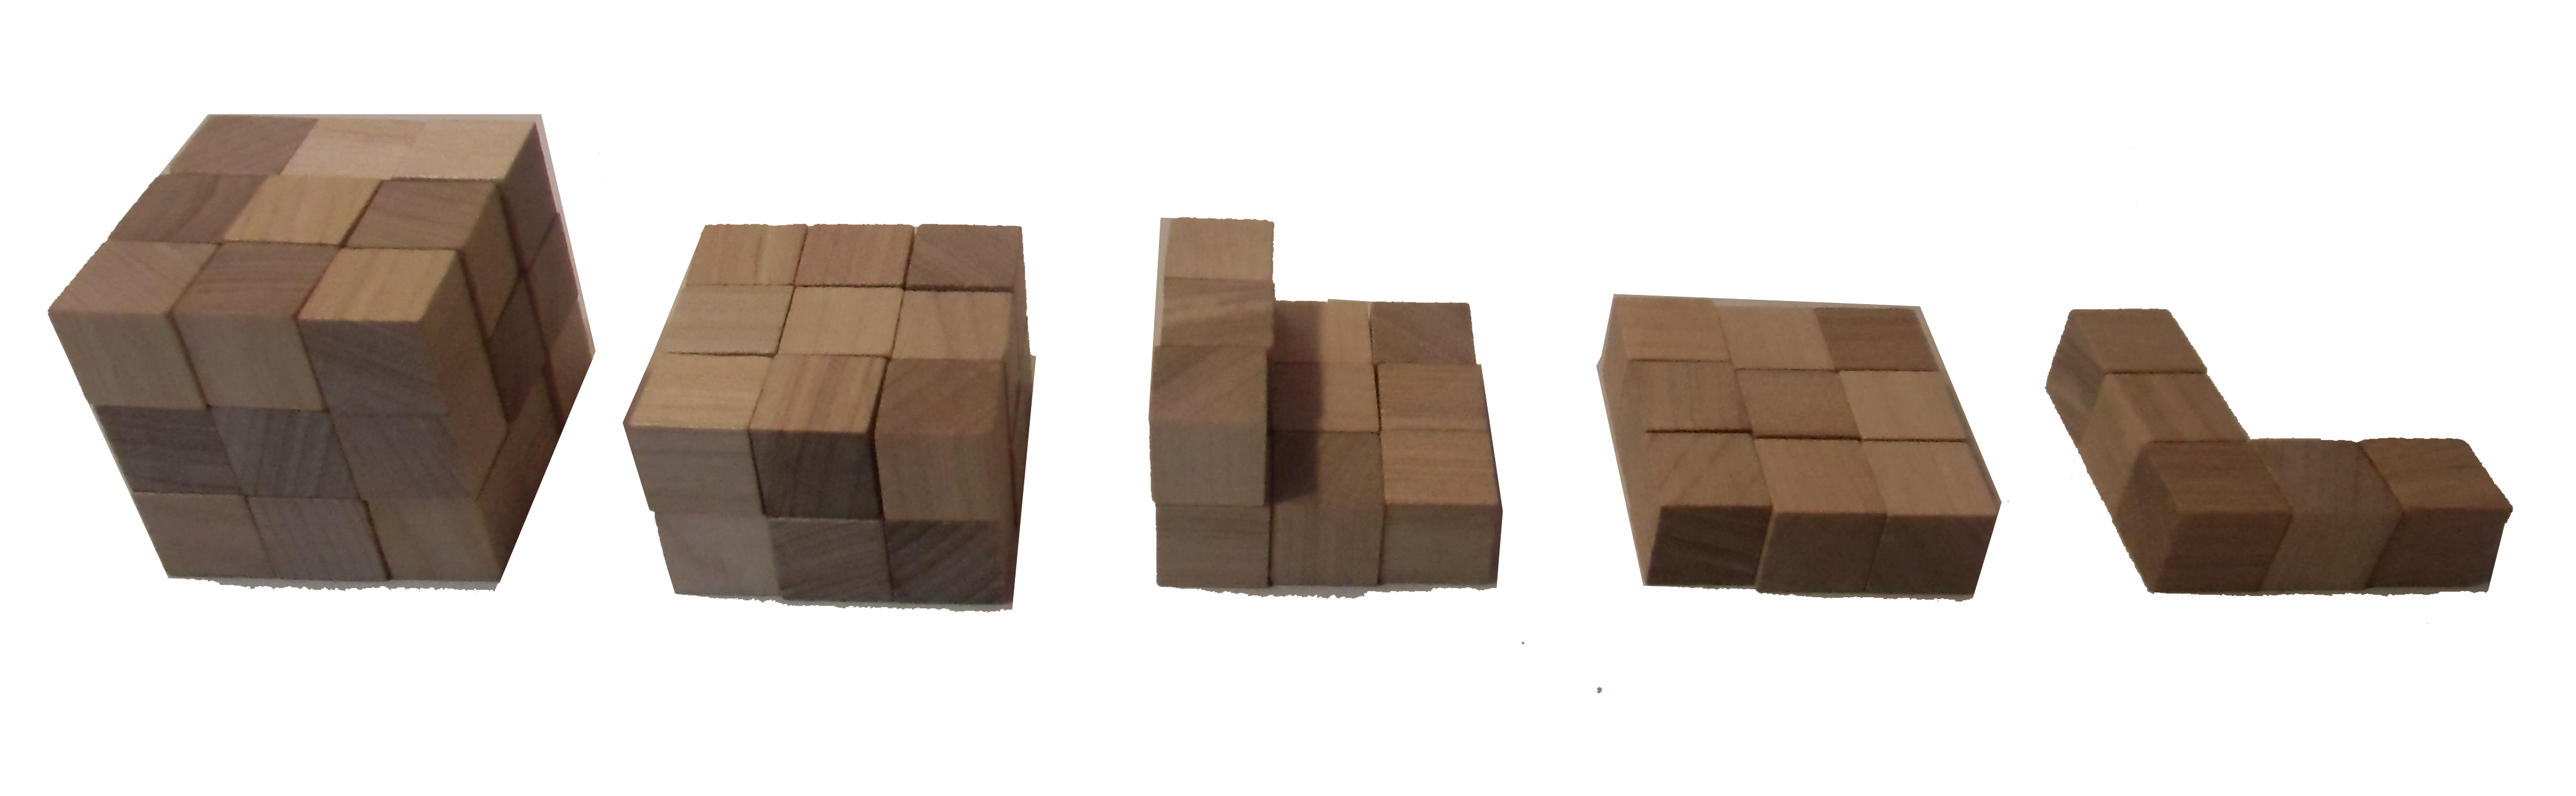 Ein großer Holzwürfel ist zusammengestzt aus 3 Ebenen mit jeweils 3 Würfeln in 3 Reihen. Die Zerlegung des Würfels wird schrittweise vorgenommen. 